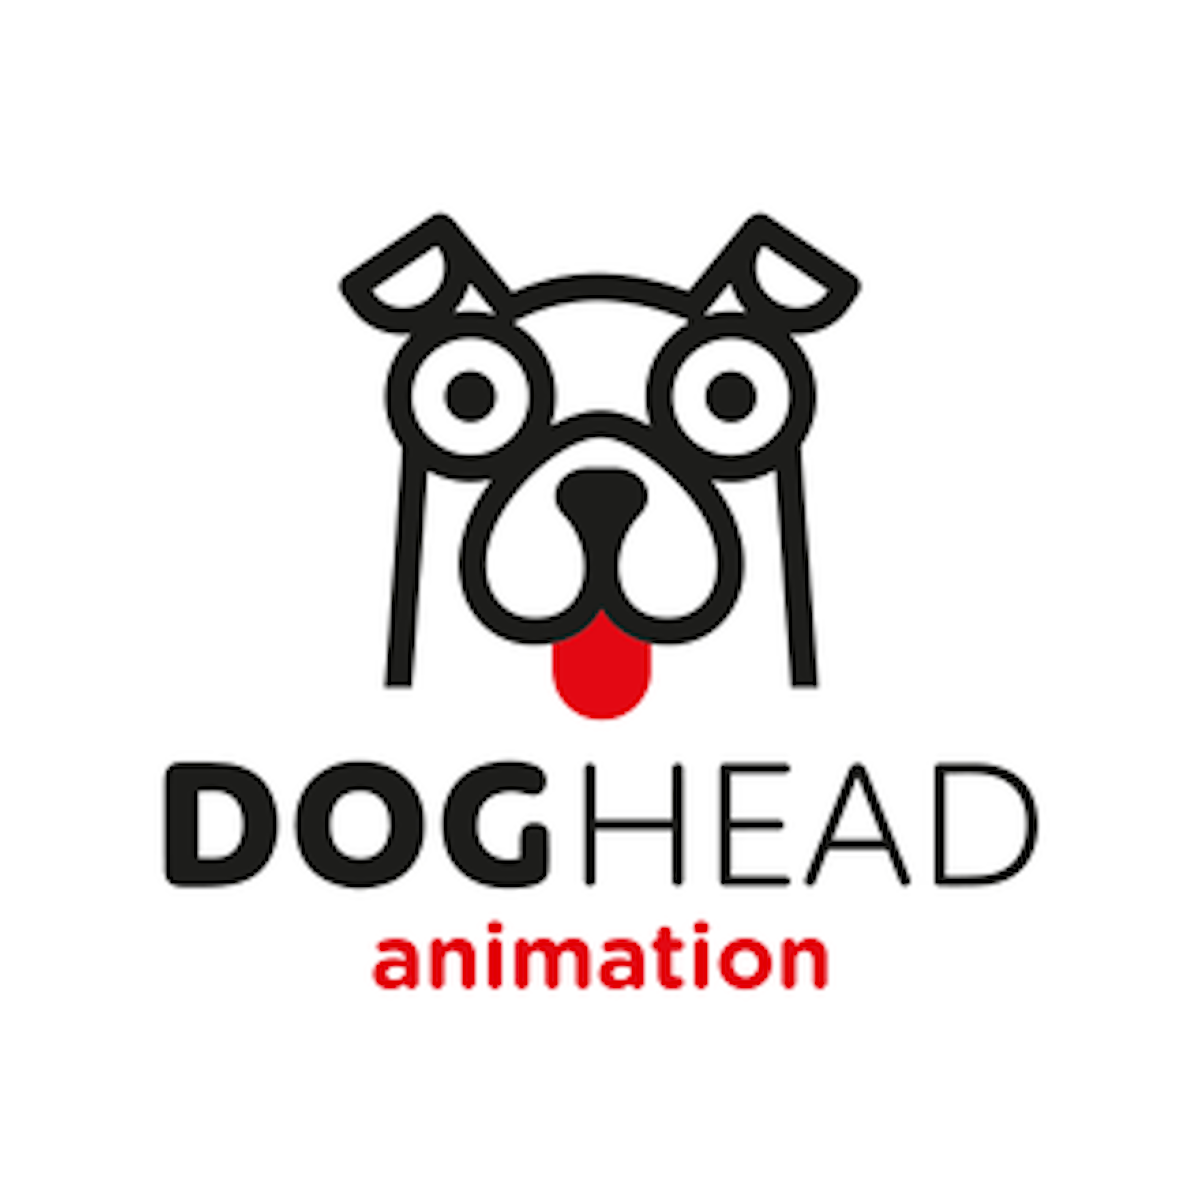 DogHeadAnimation Logo